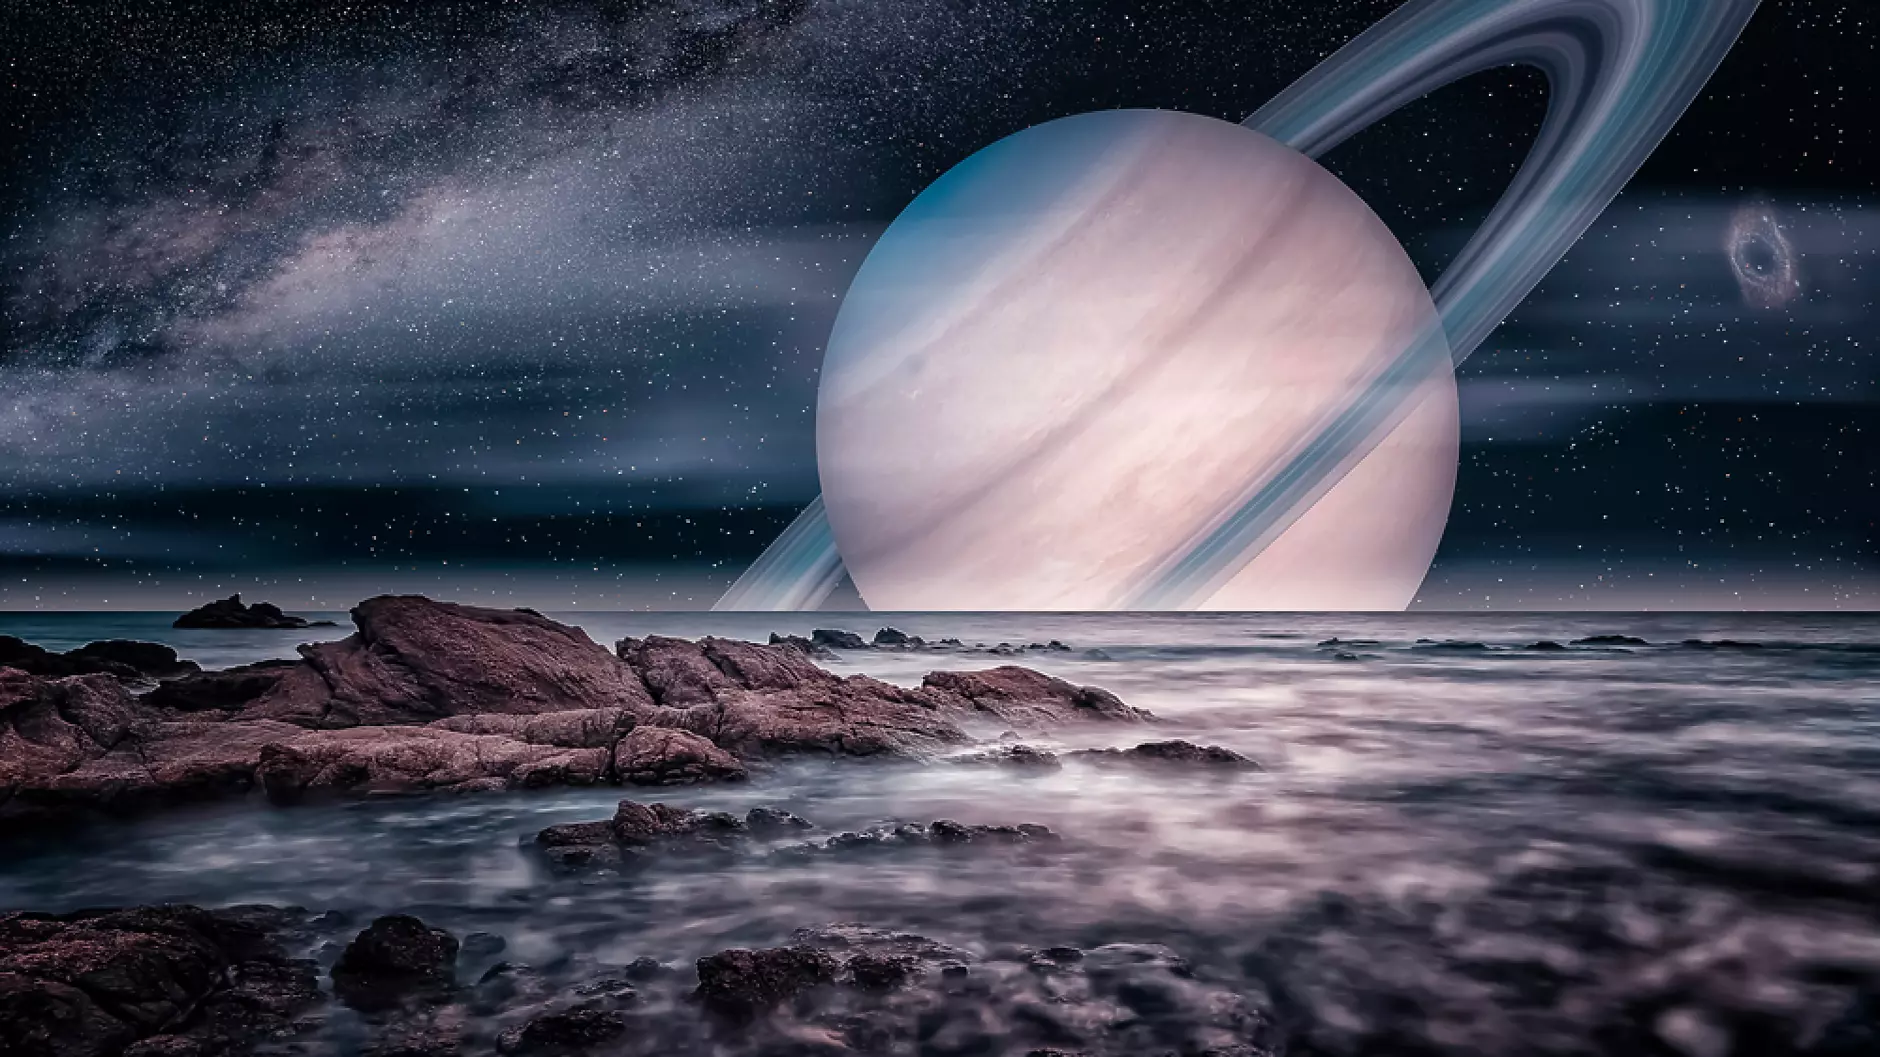 Учени откриха запаси от фосфор в океана на сатурновната луна Енцелад